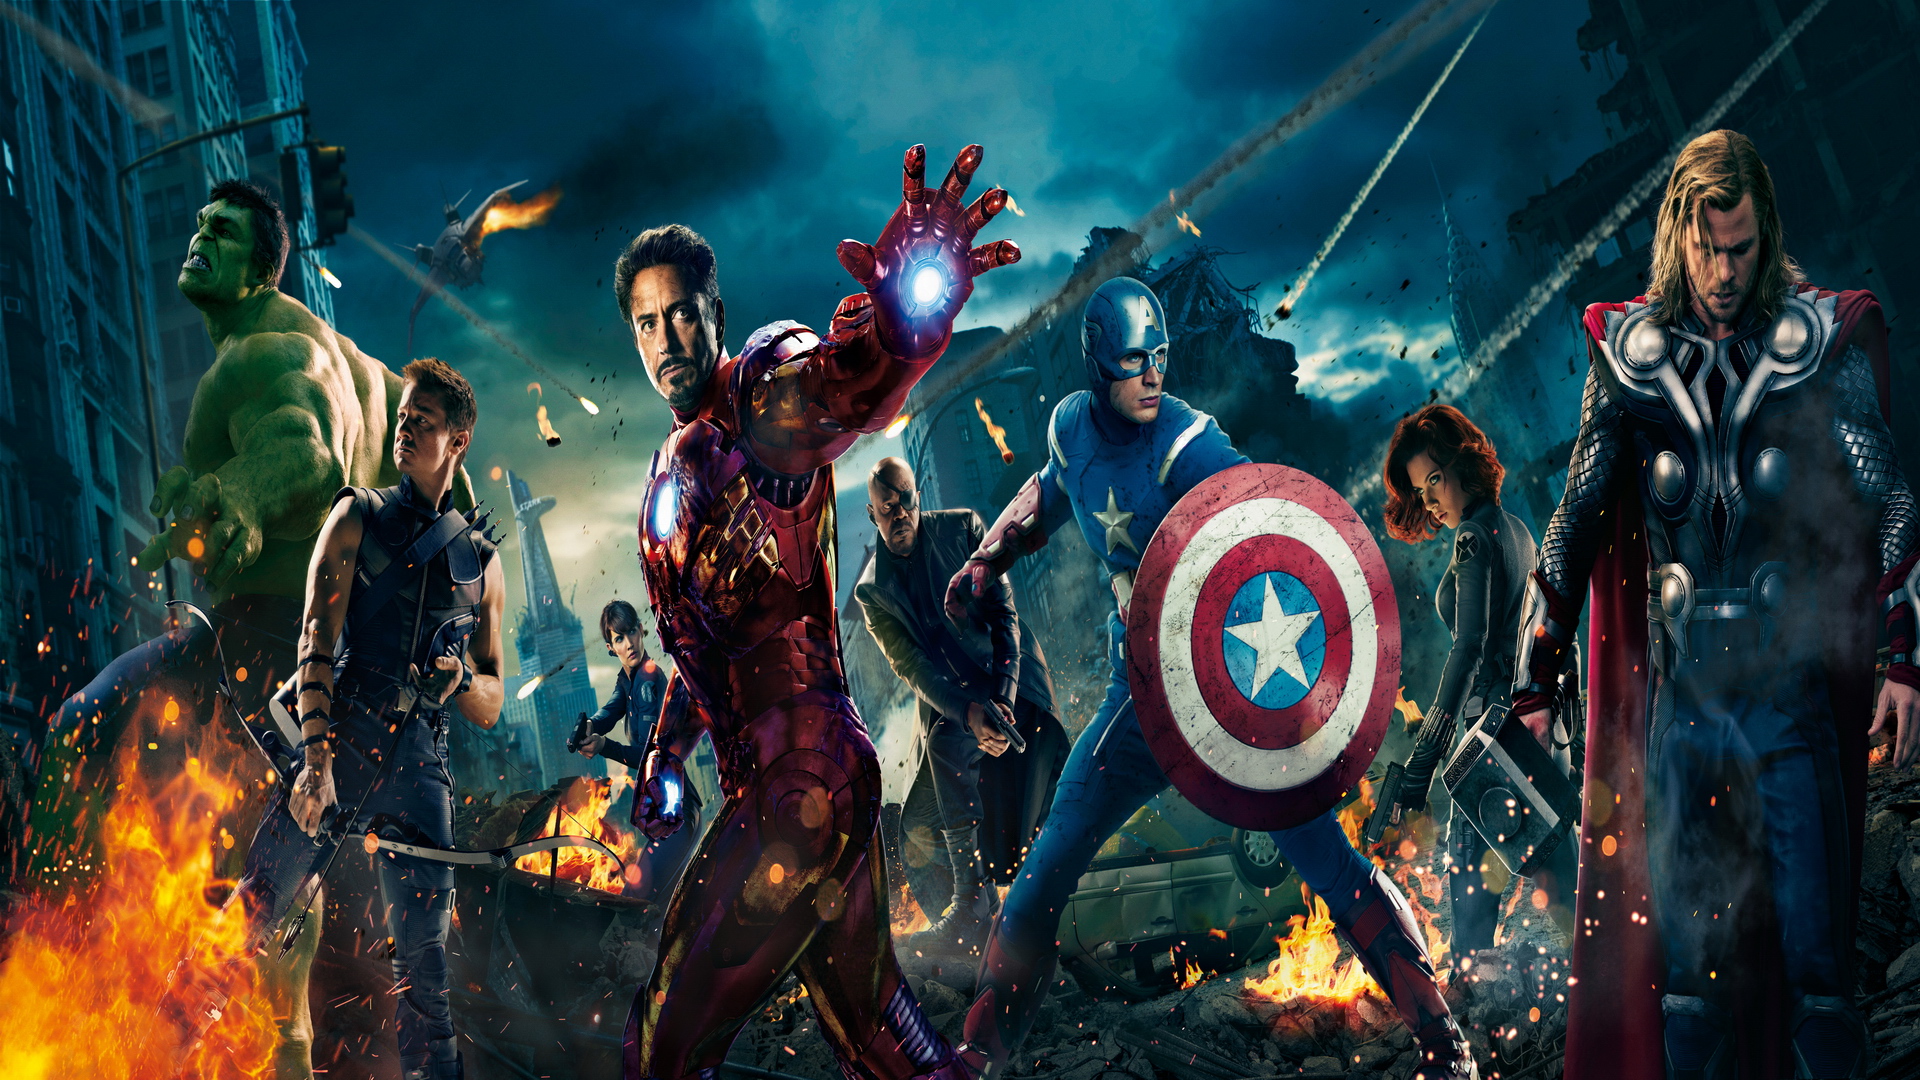 [42+] Avengers HD Wallpapers 1080p - WallpaperSafari